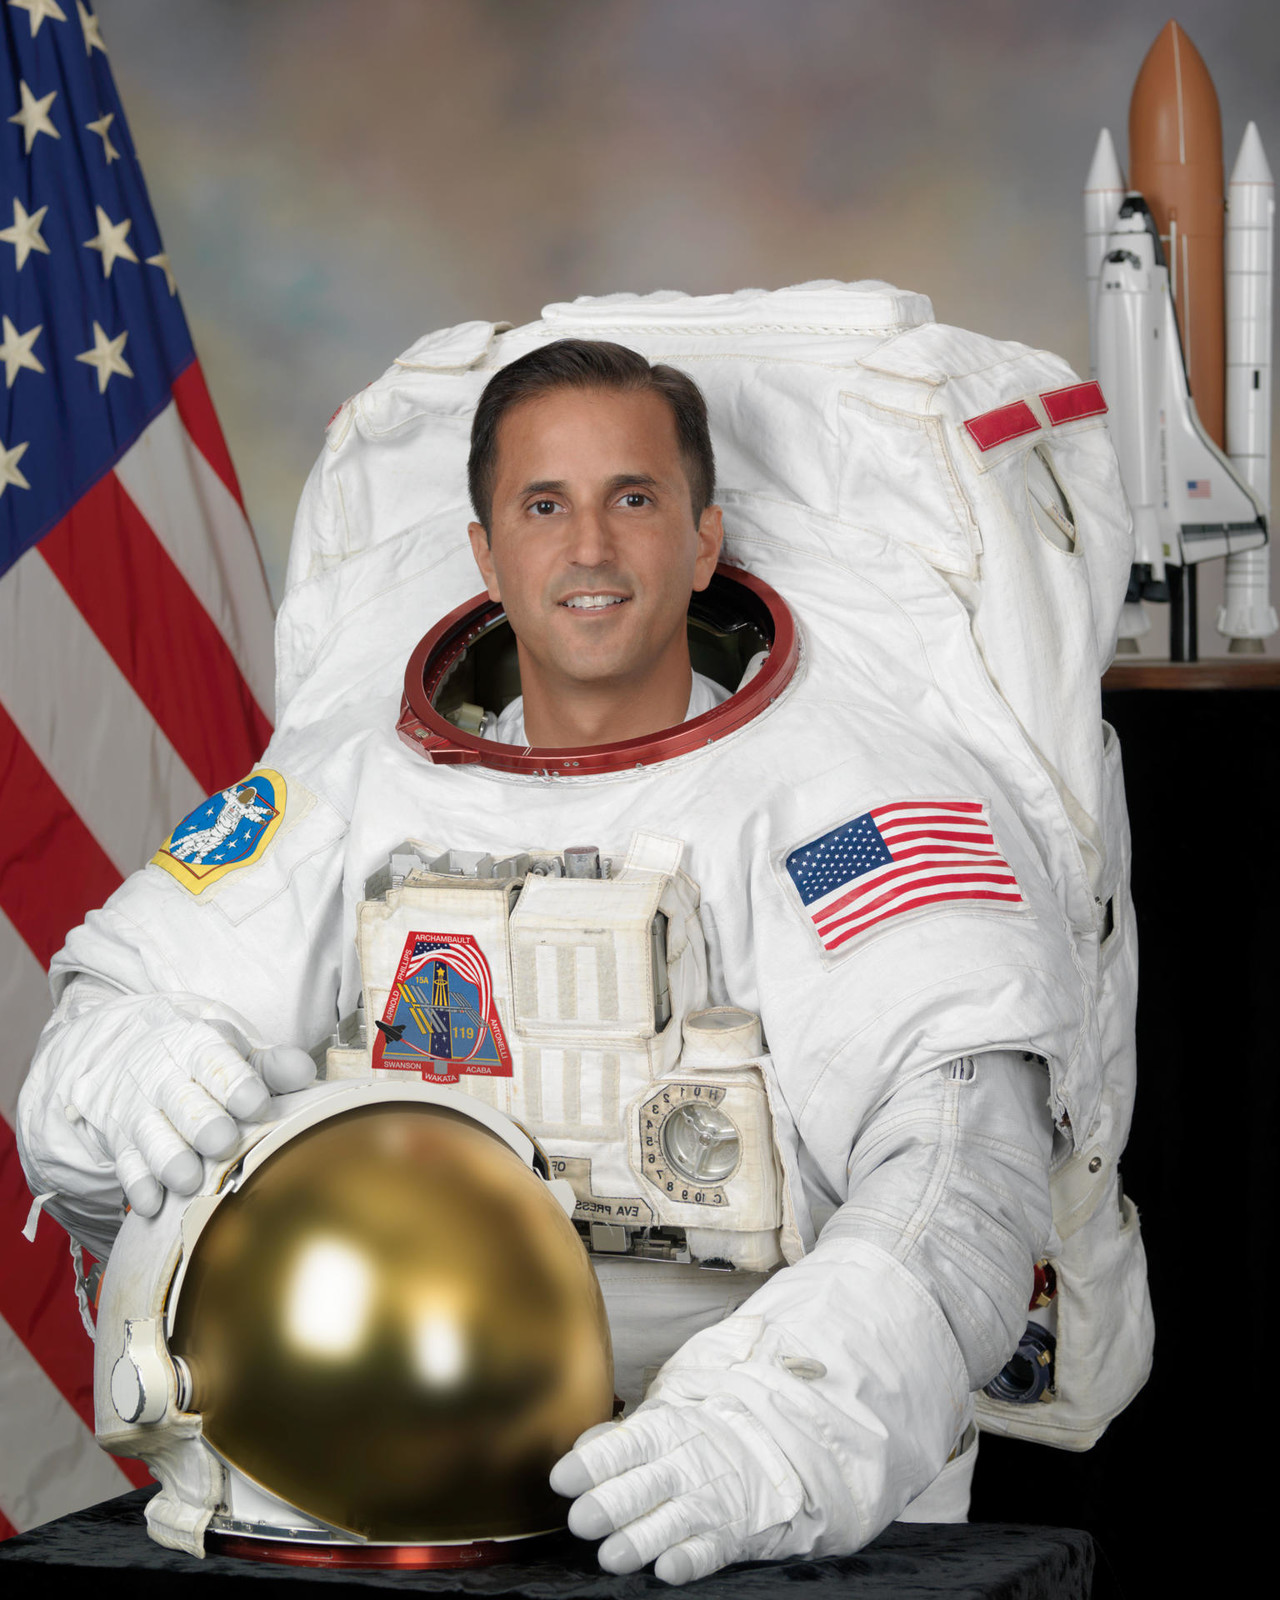 La NASA nombra a un hispano jefe de sus astronautas